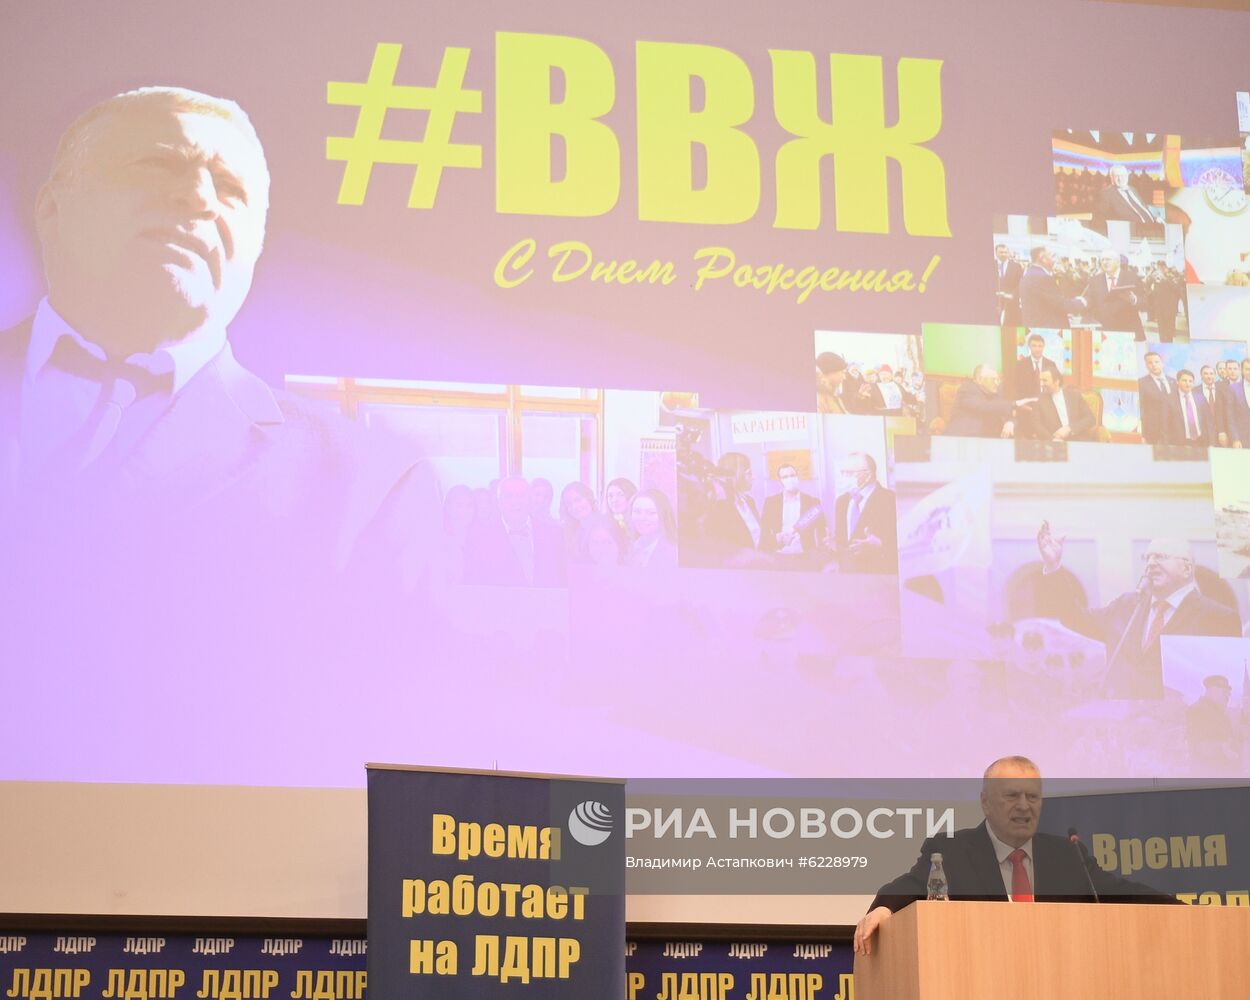 Обращение В. Жириновского к молодежи в свой день рождения